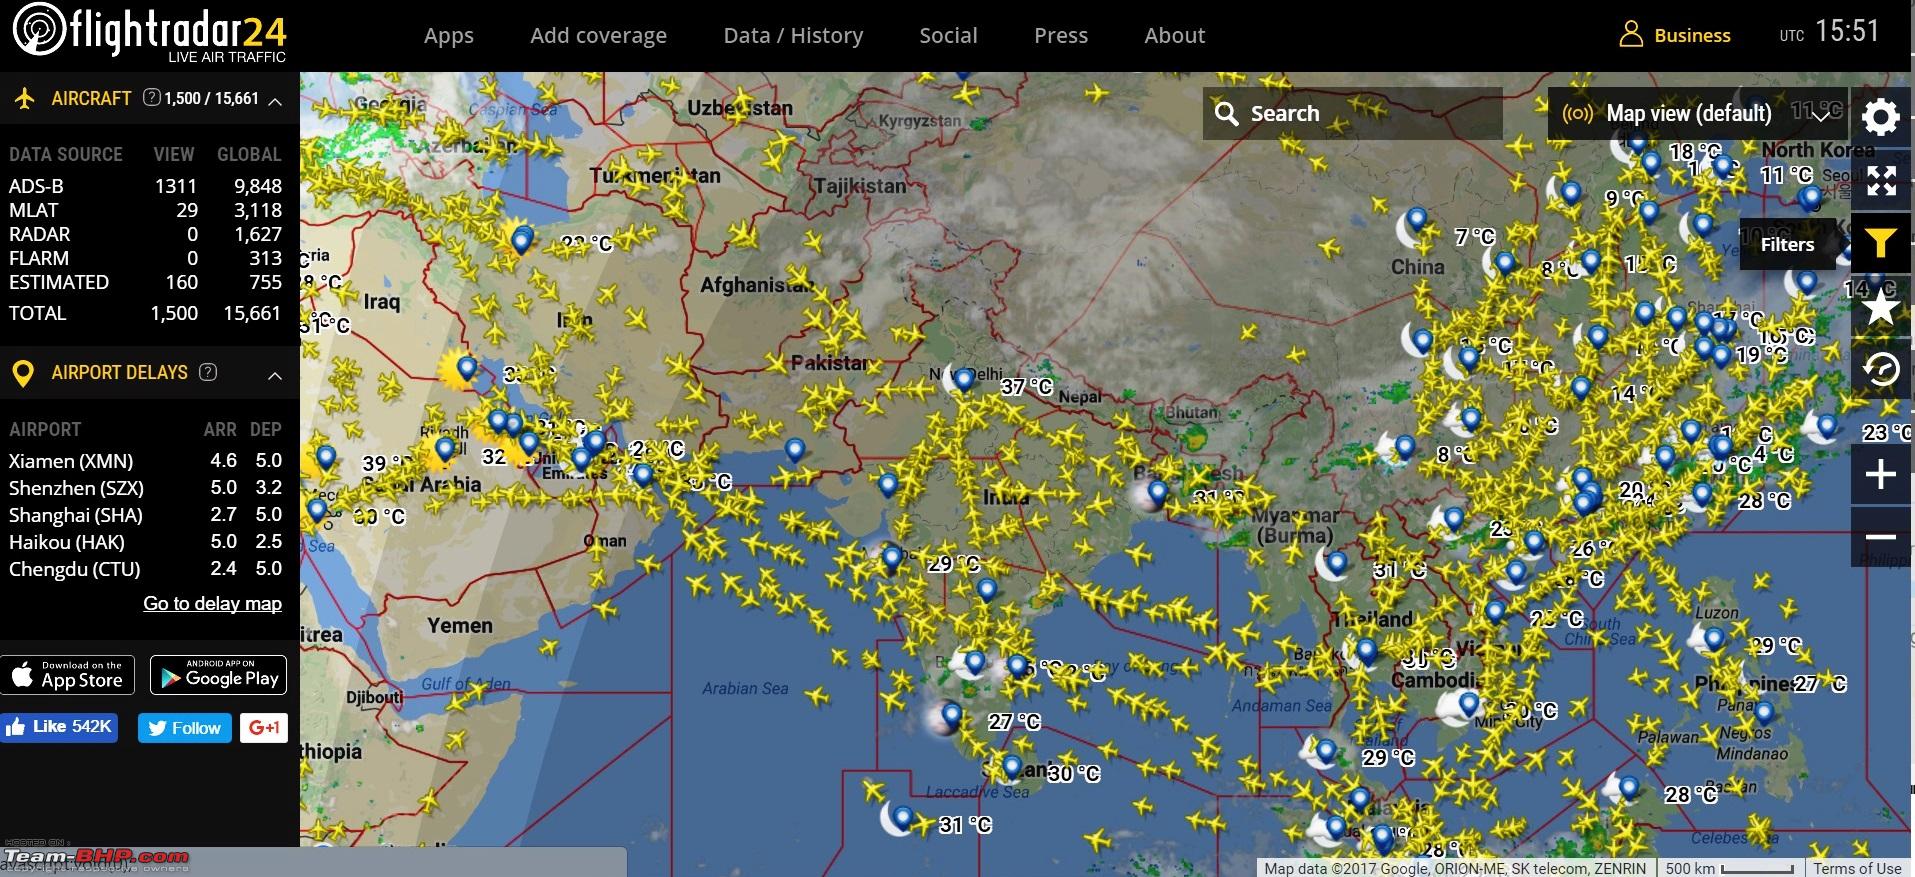 flight radar 24 google earth download